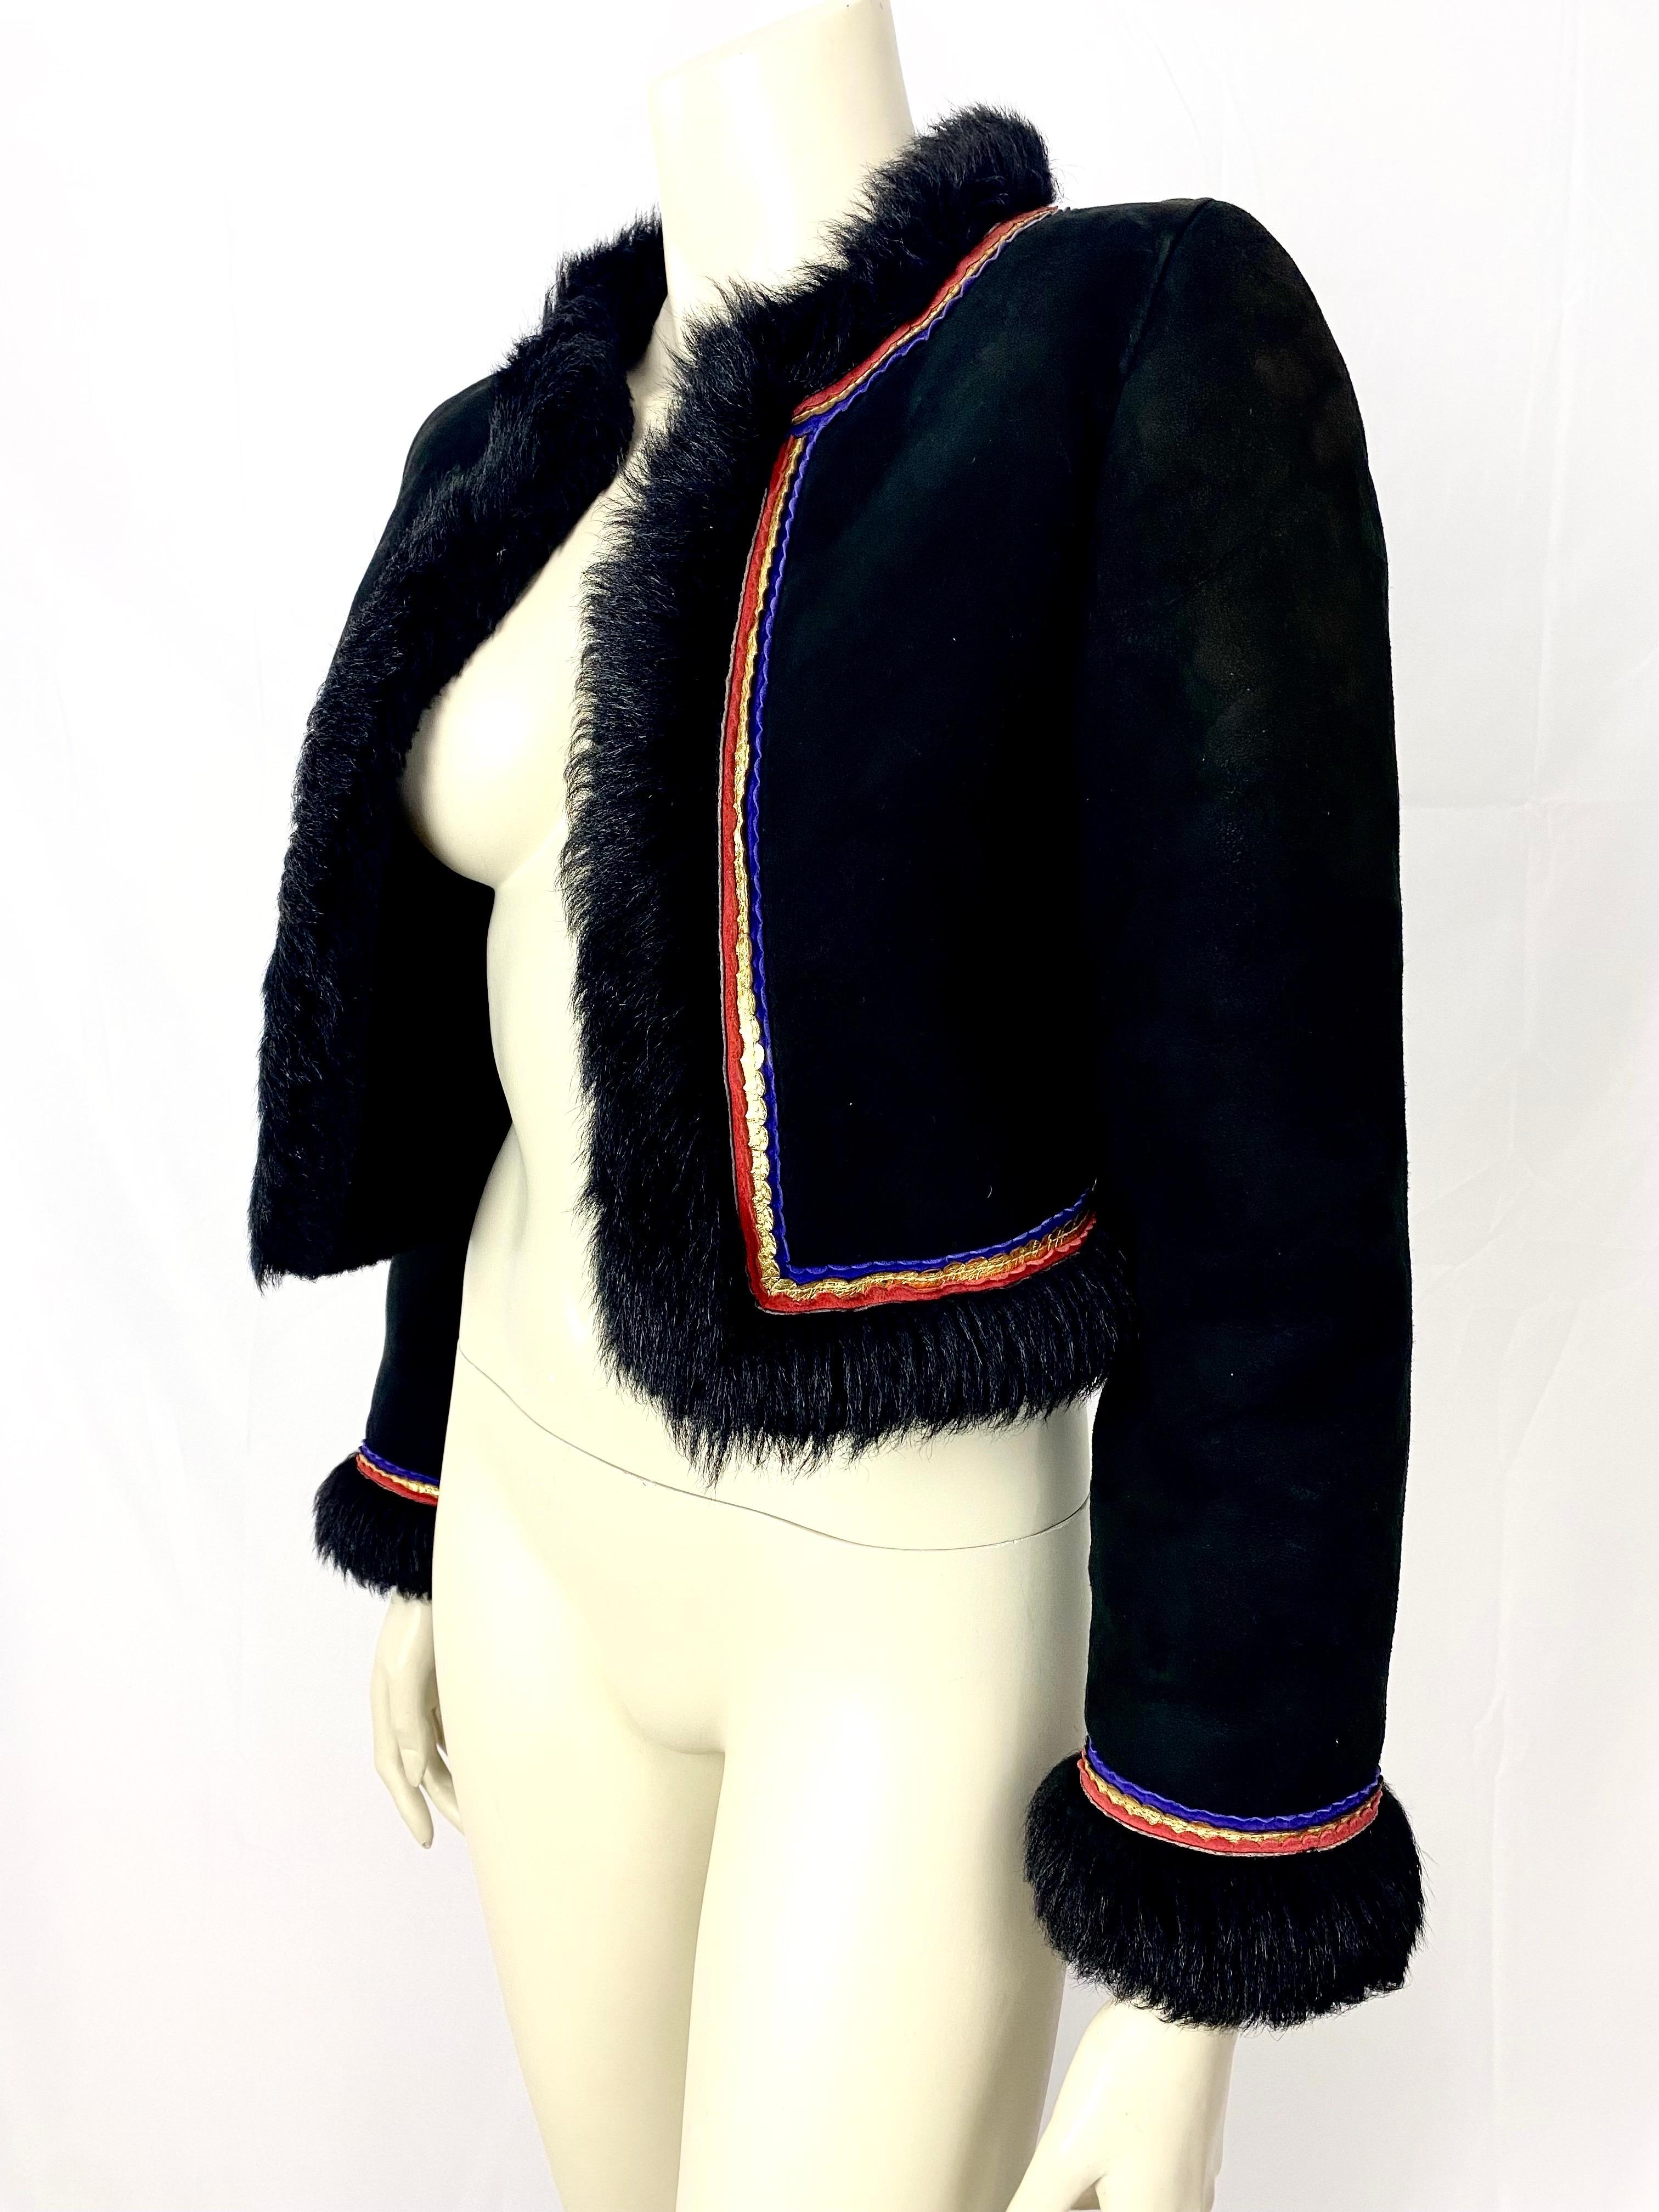 Veste courte vintage de Valentino en shearling noir avec des détails de tresses en cuir rouge, or et violet.
La veste est très chaude et la peau souple.
Col rond, taille indiquée 32, se référer aux mesures
épaules 40cm
Largeur de la poitrine